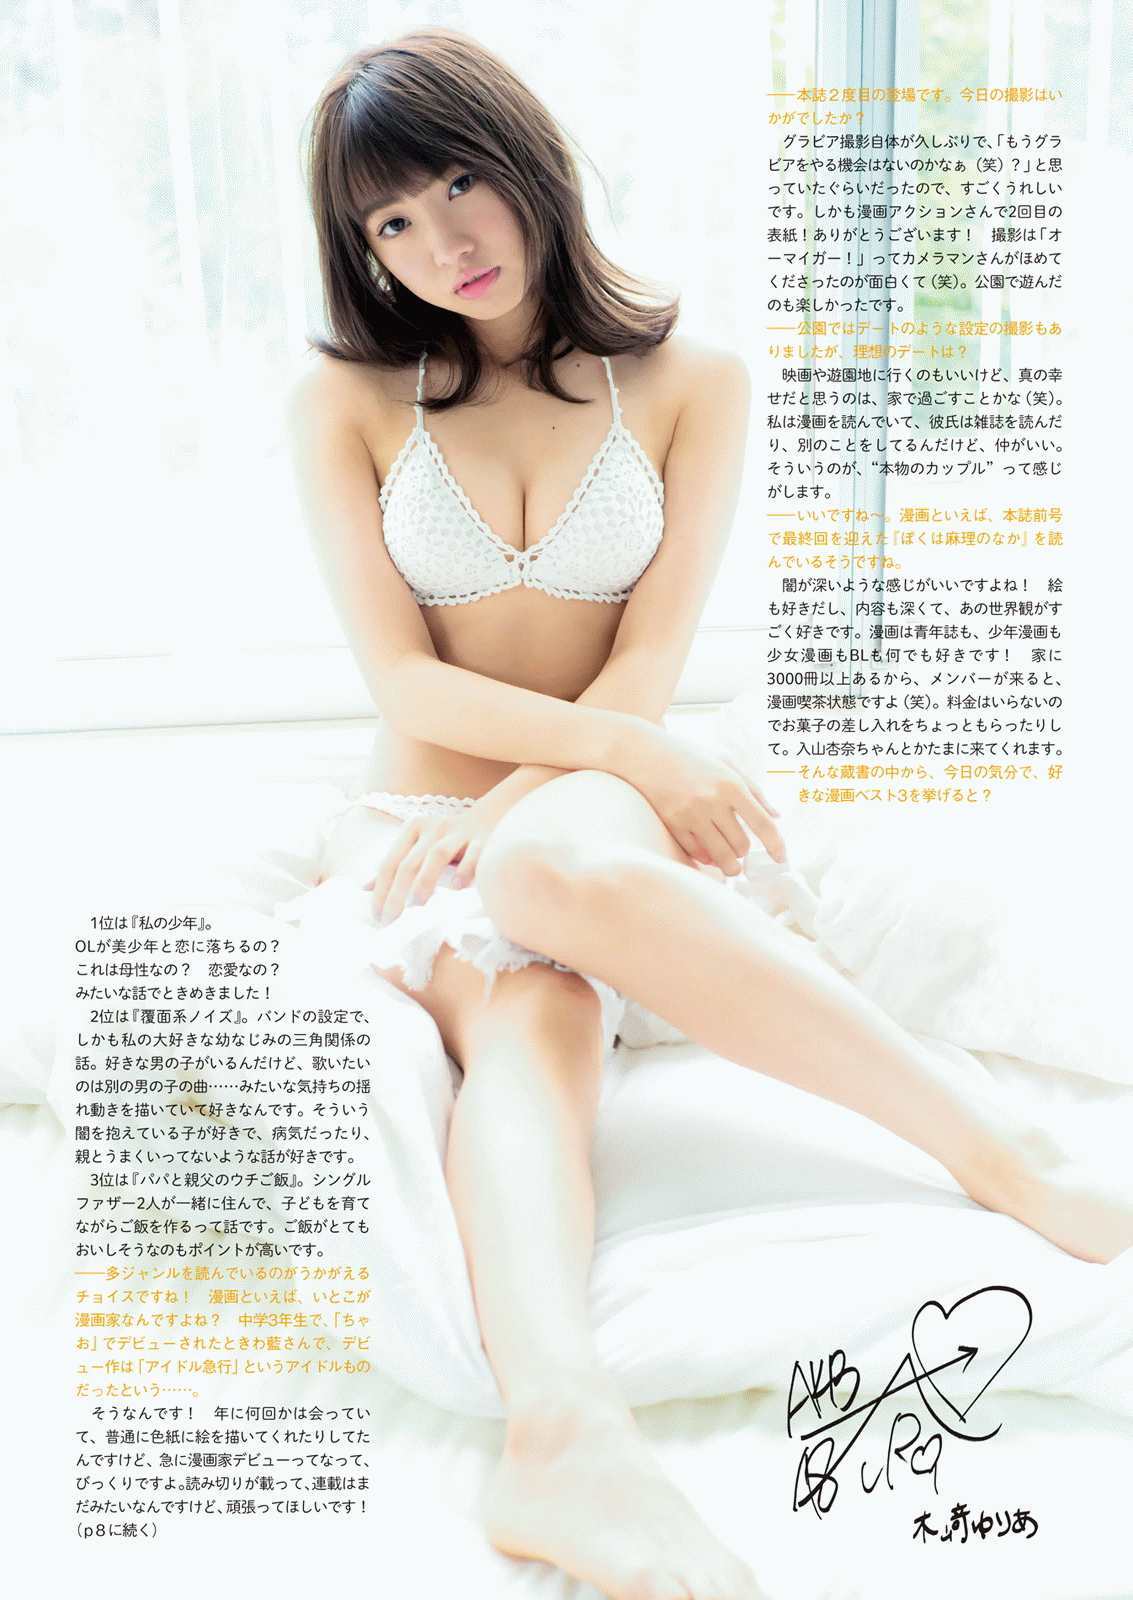 [网络美女]日本嫩模:木崎由利娅高品质绝版网图珍藏版(11P)